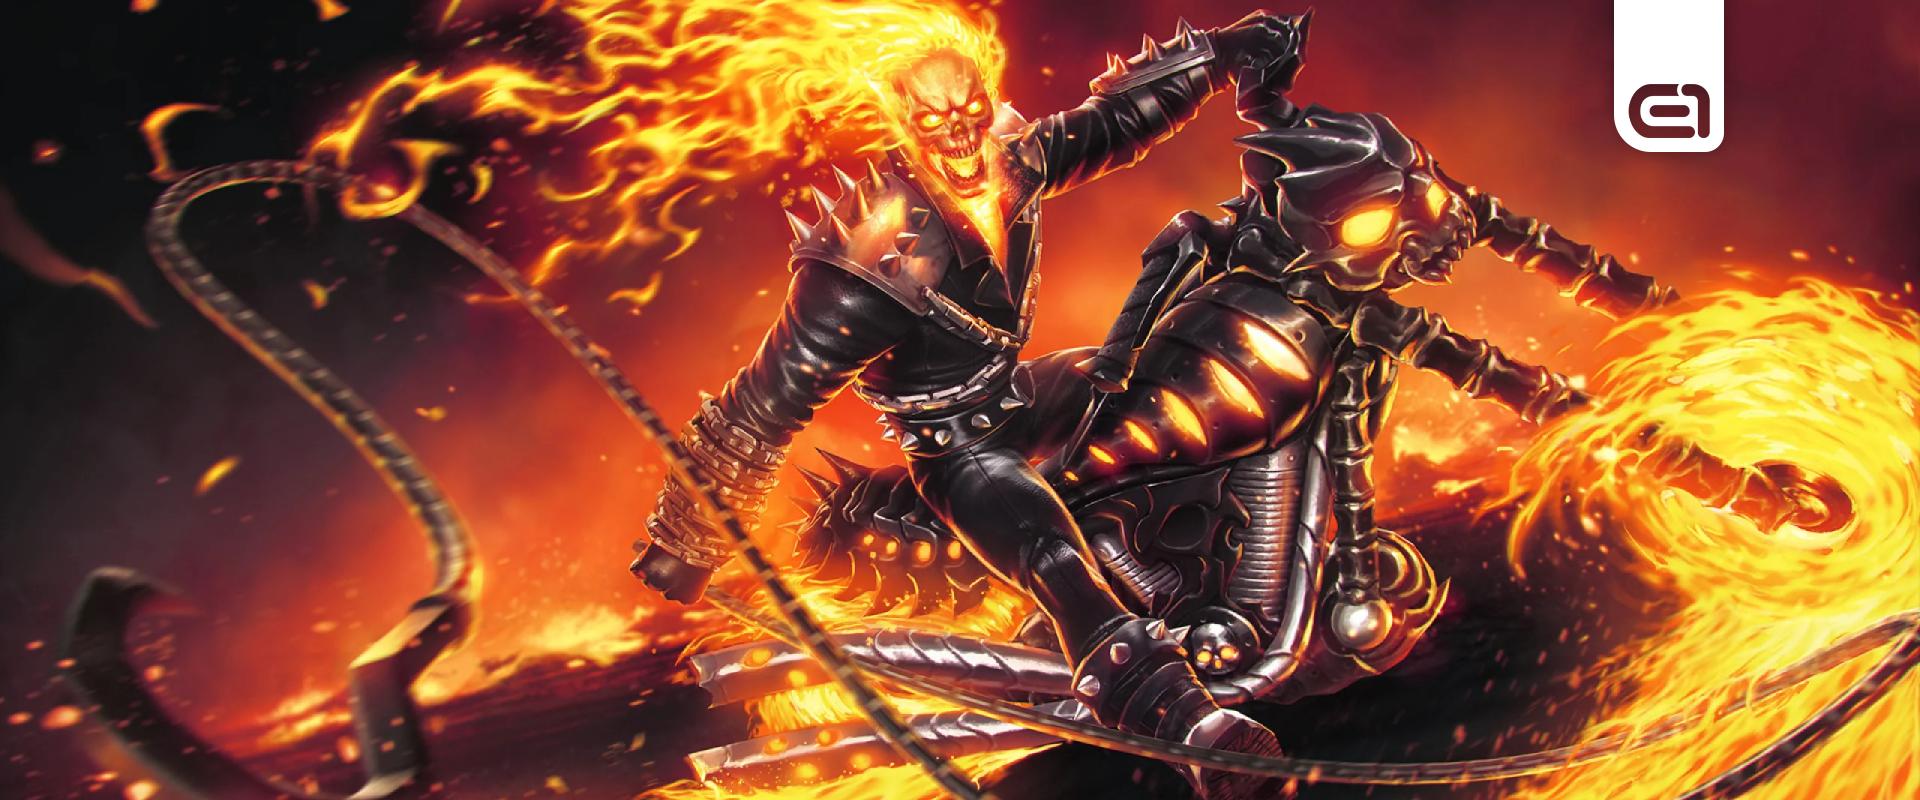 Egy új bejelentésnek hála Ghost Rider is csatlakozhat az MCU-hoz